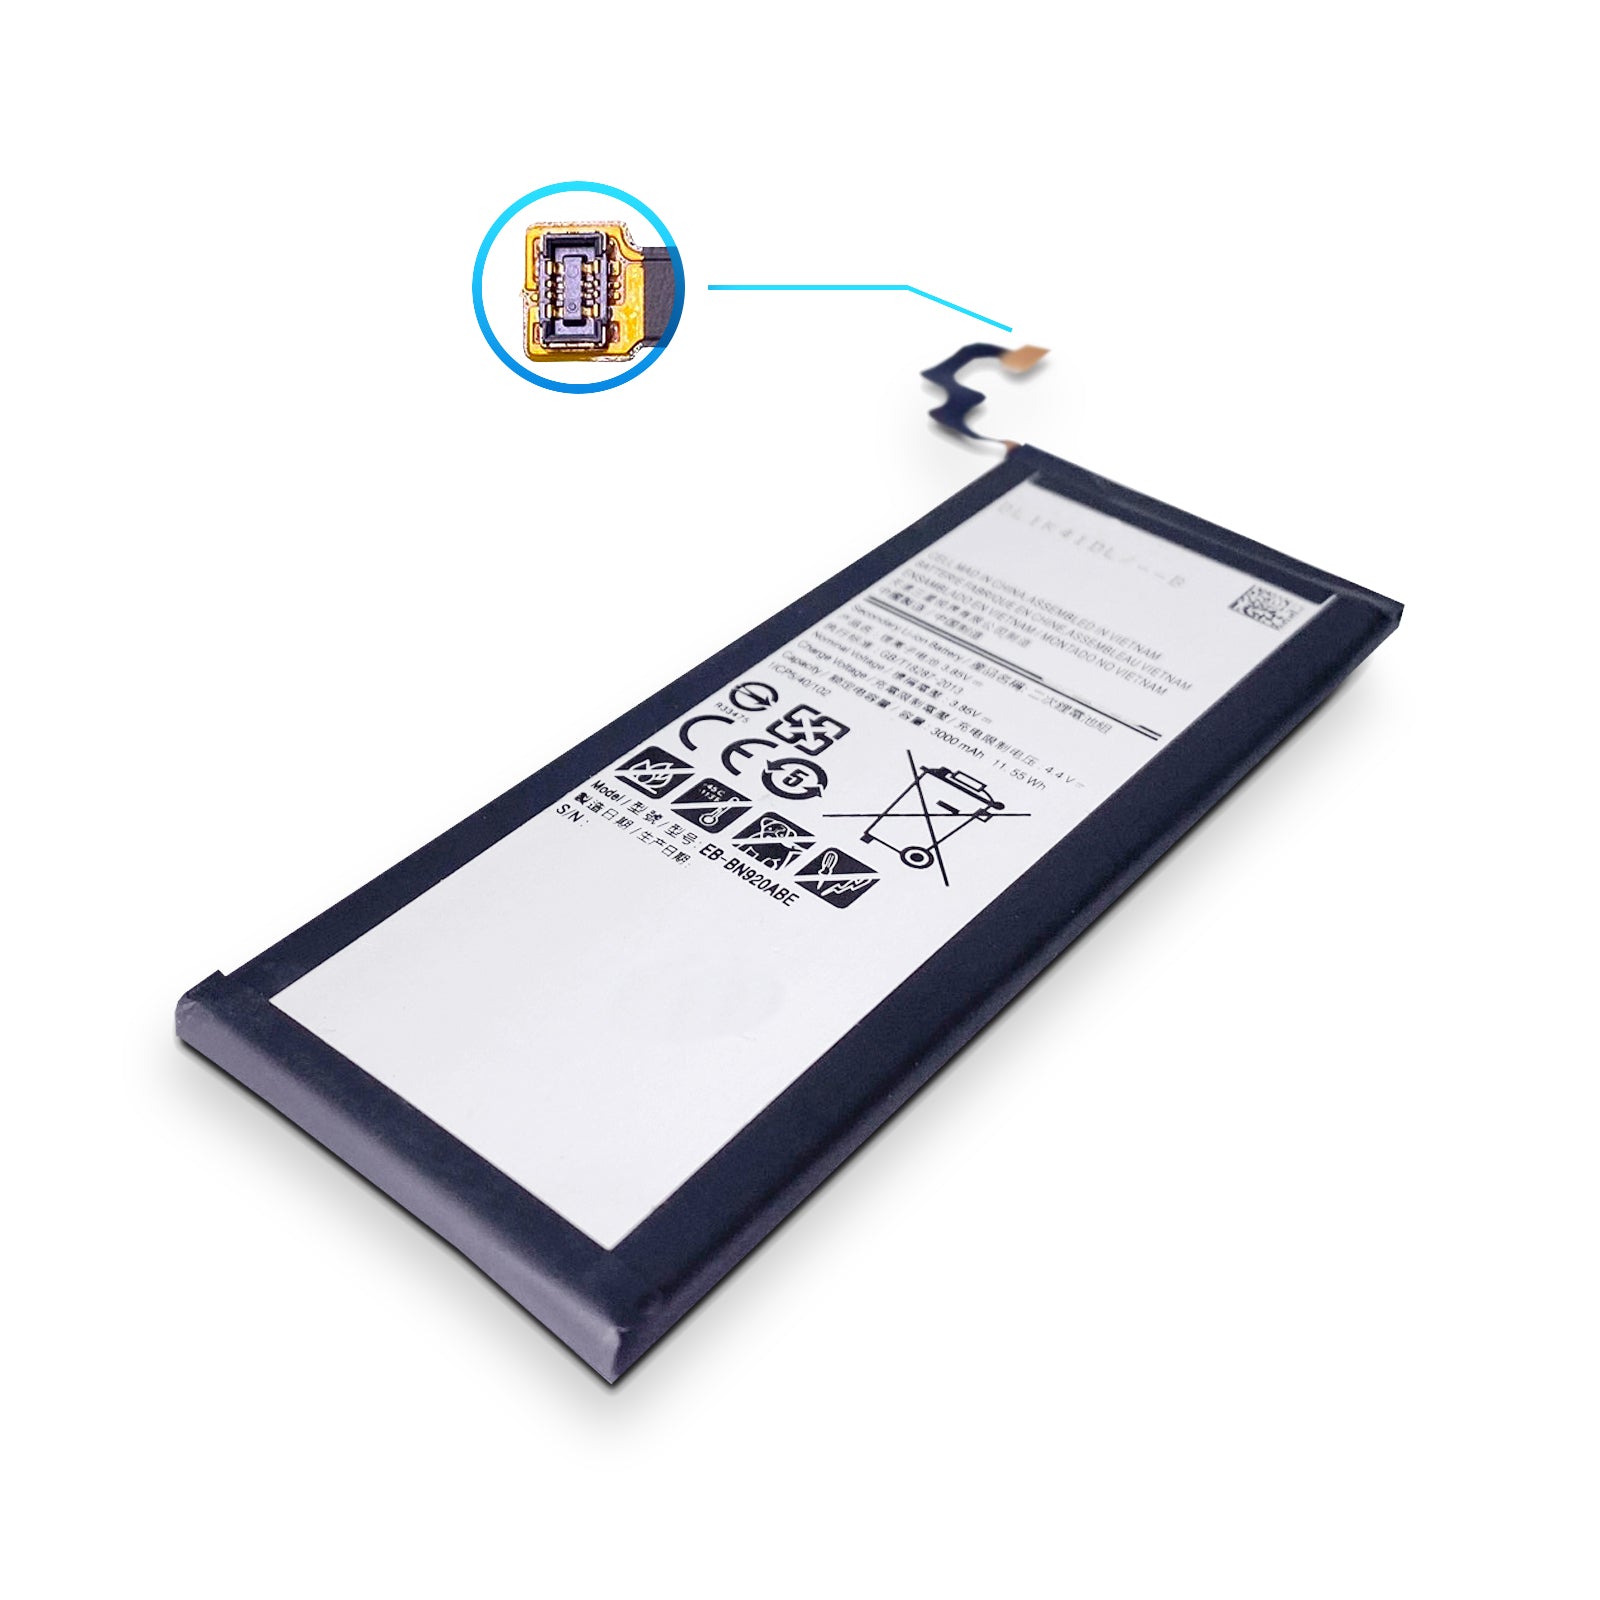  Ersetzen Sie den EB-BN920ABE Akku Ihres Samsung Galaxy Note 5 SM-N920F N920 durch diesen Ersatzakku und verlängern Sie die Akkulaufzeit Ihres Geräts. 